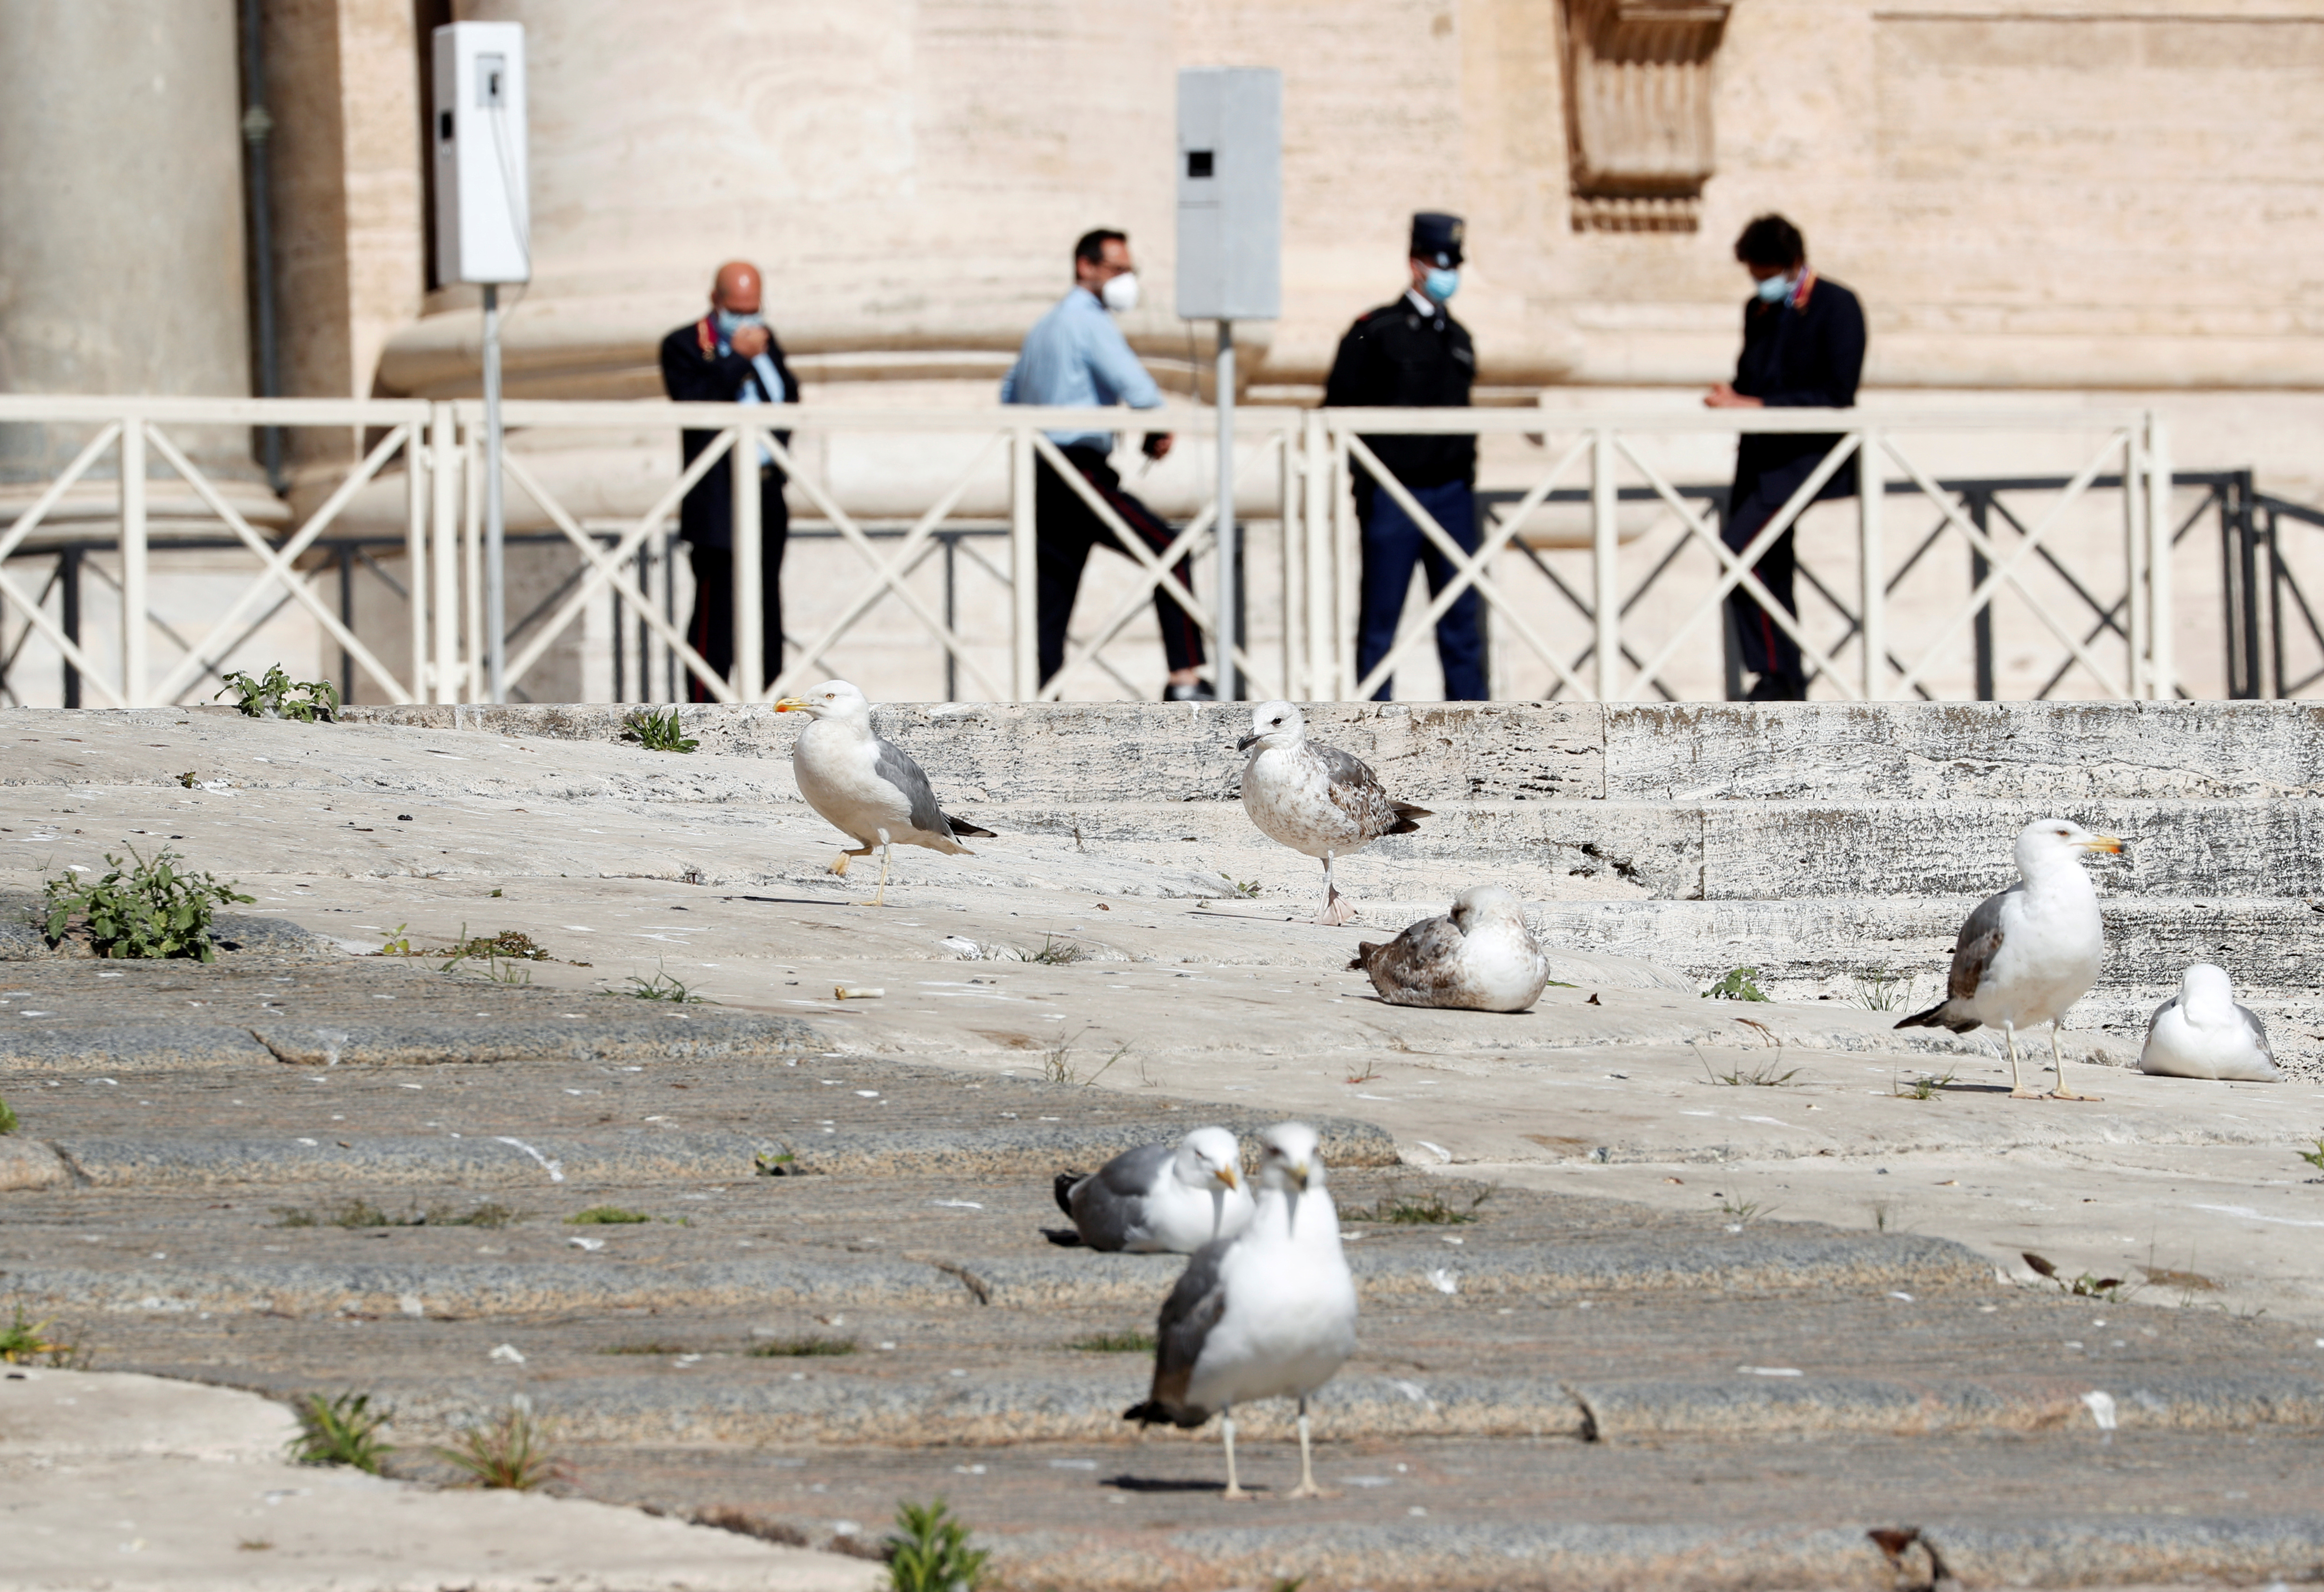 Las gaviotas se sientan en las escaleras de la Basílica de San Pedro mientras el Papa Francisco celebra la audiencia general semanal en el Vaticano el 27 de mayo de 2020. (REUTERS/Remo Casilli)